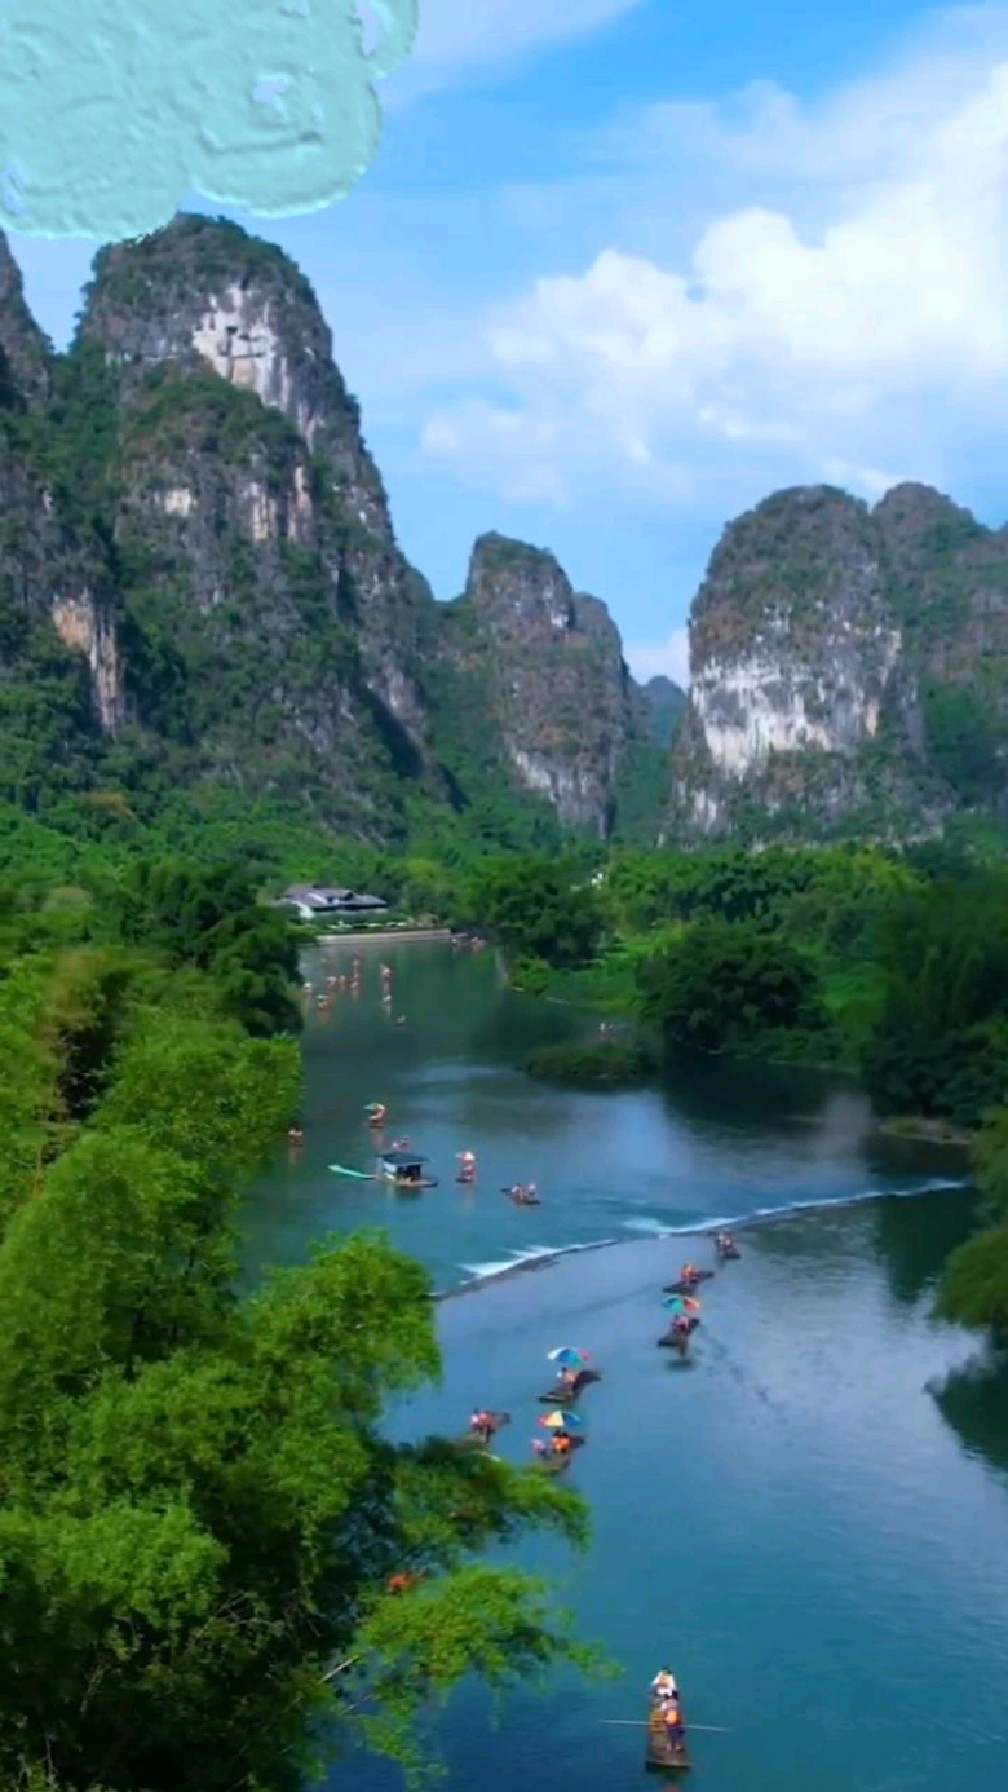 桂林山水风景手机壁纸图片